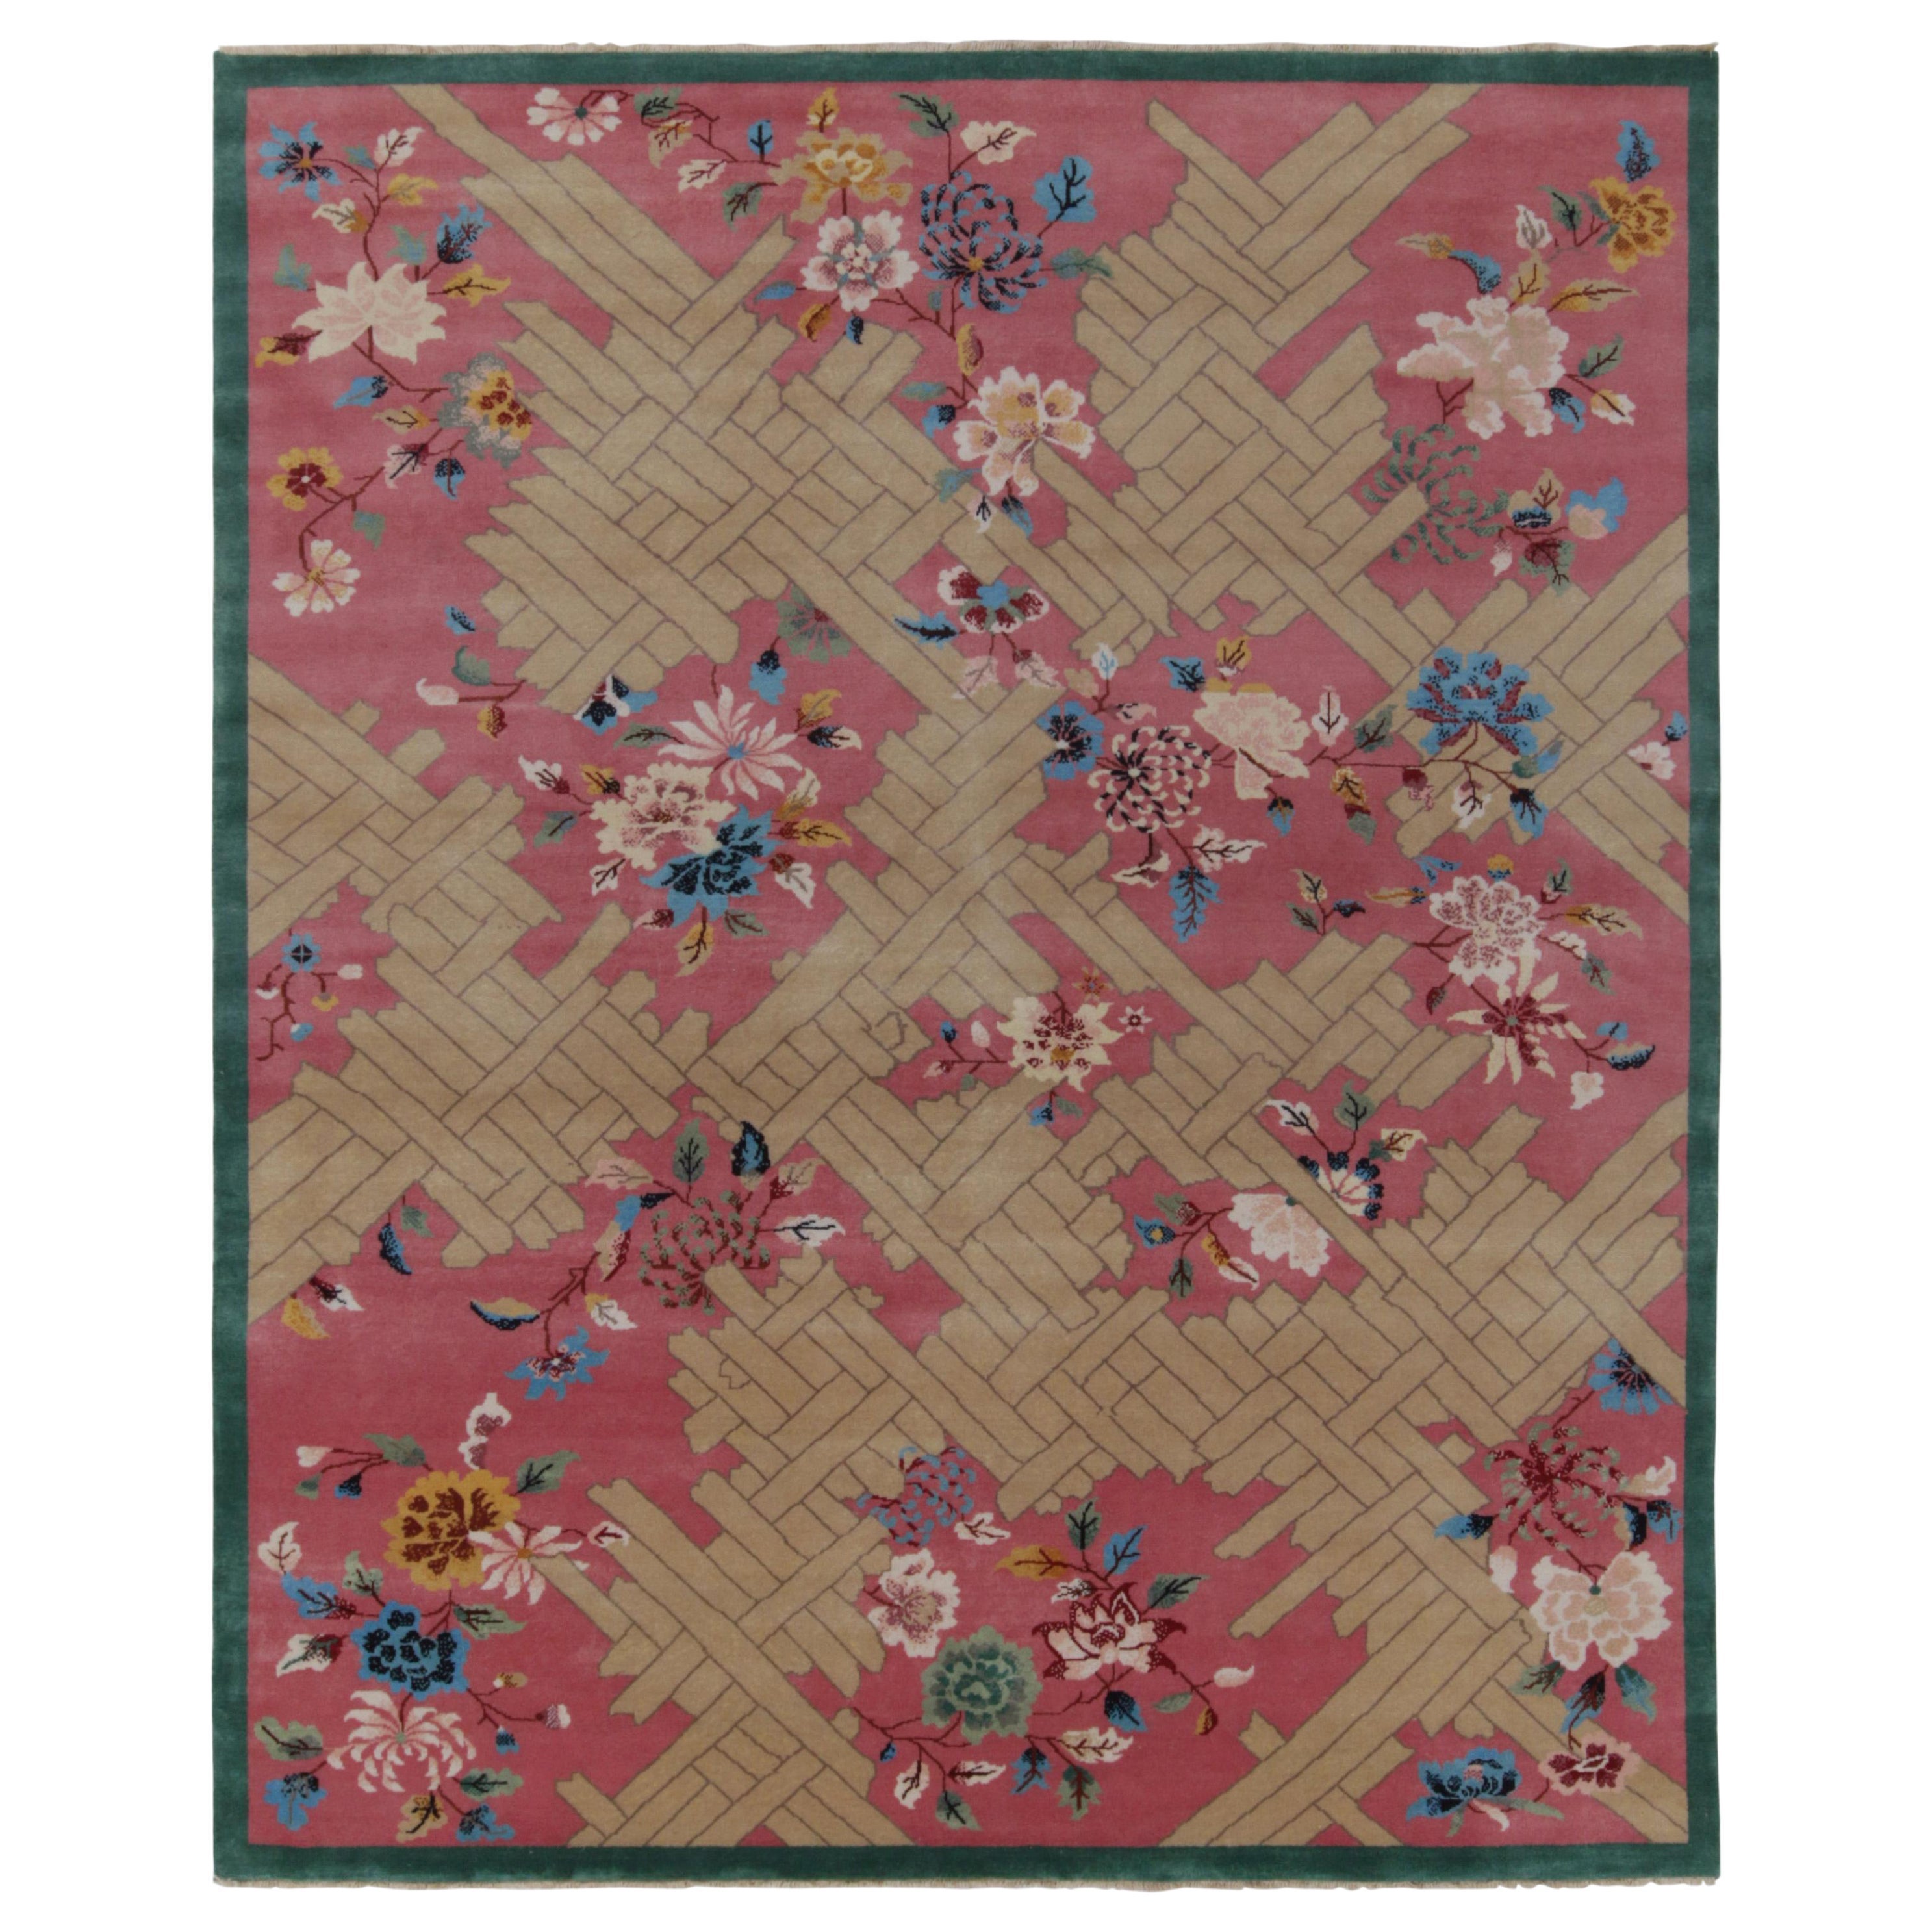 Rug & Kilim's Chinesischer Deko-Teppich in Rosa, Beige und Blau mit Blumenmustern